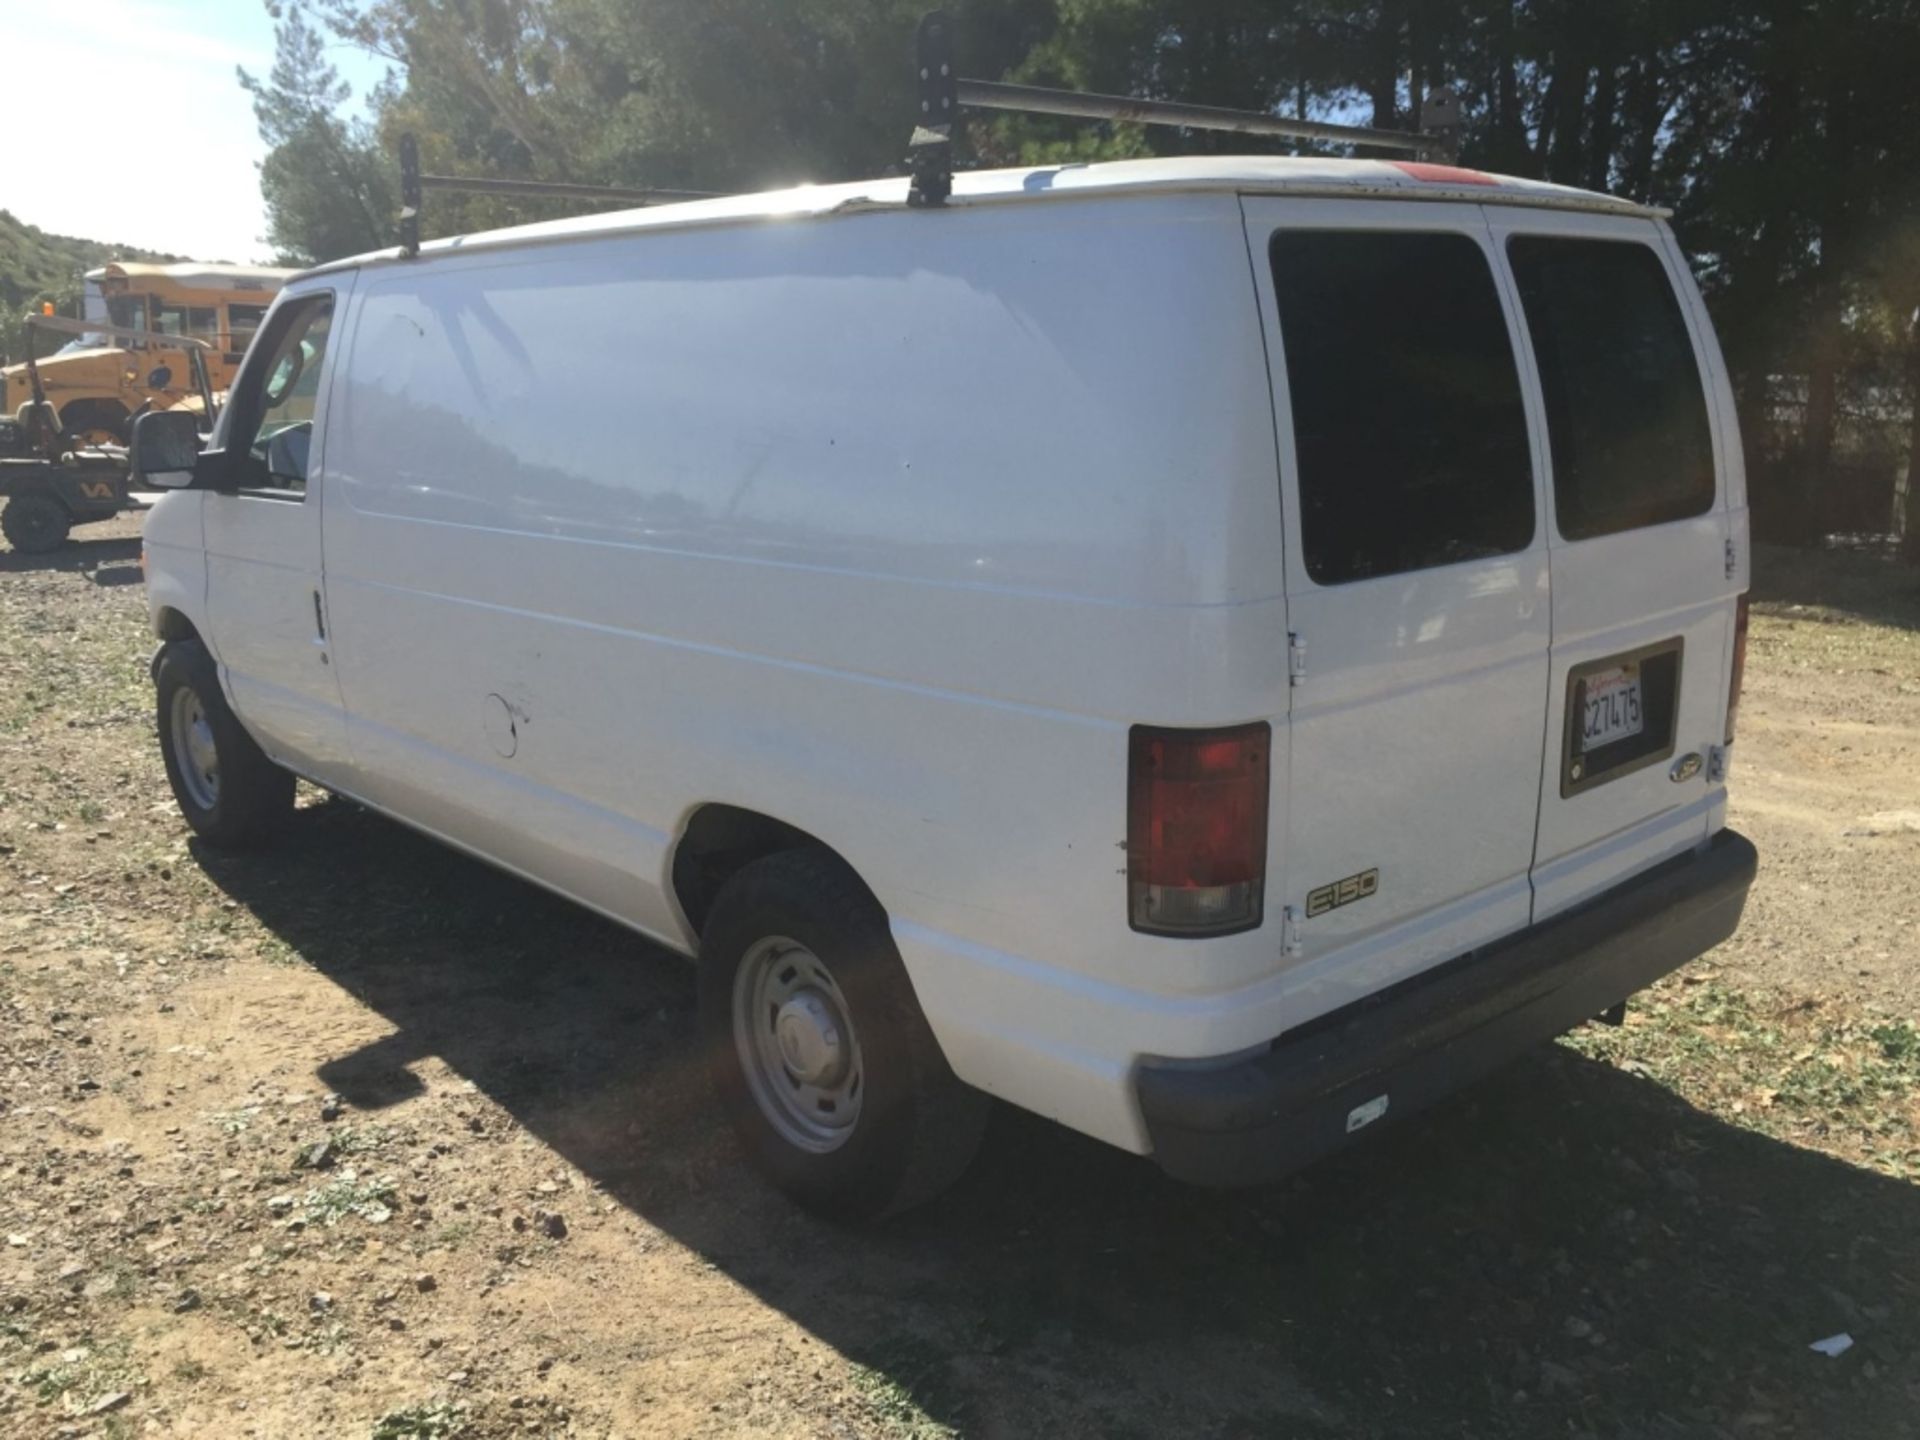 Ford Econoline E-150 Cargo Van, - Image 3 of 26